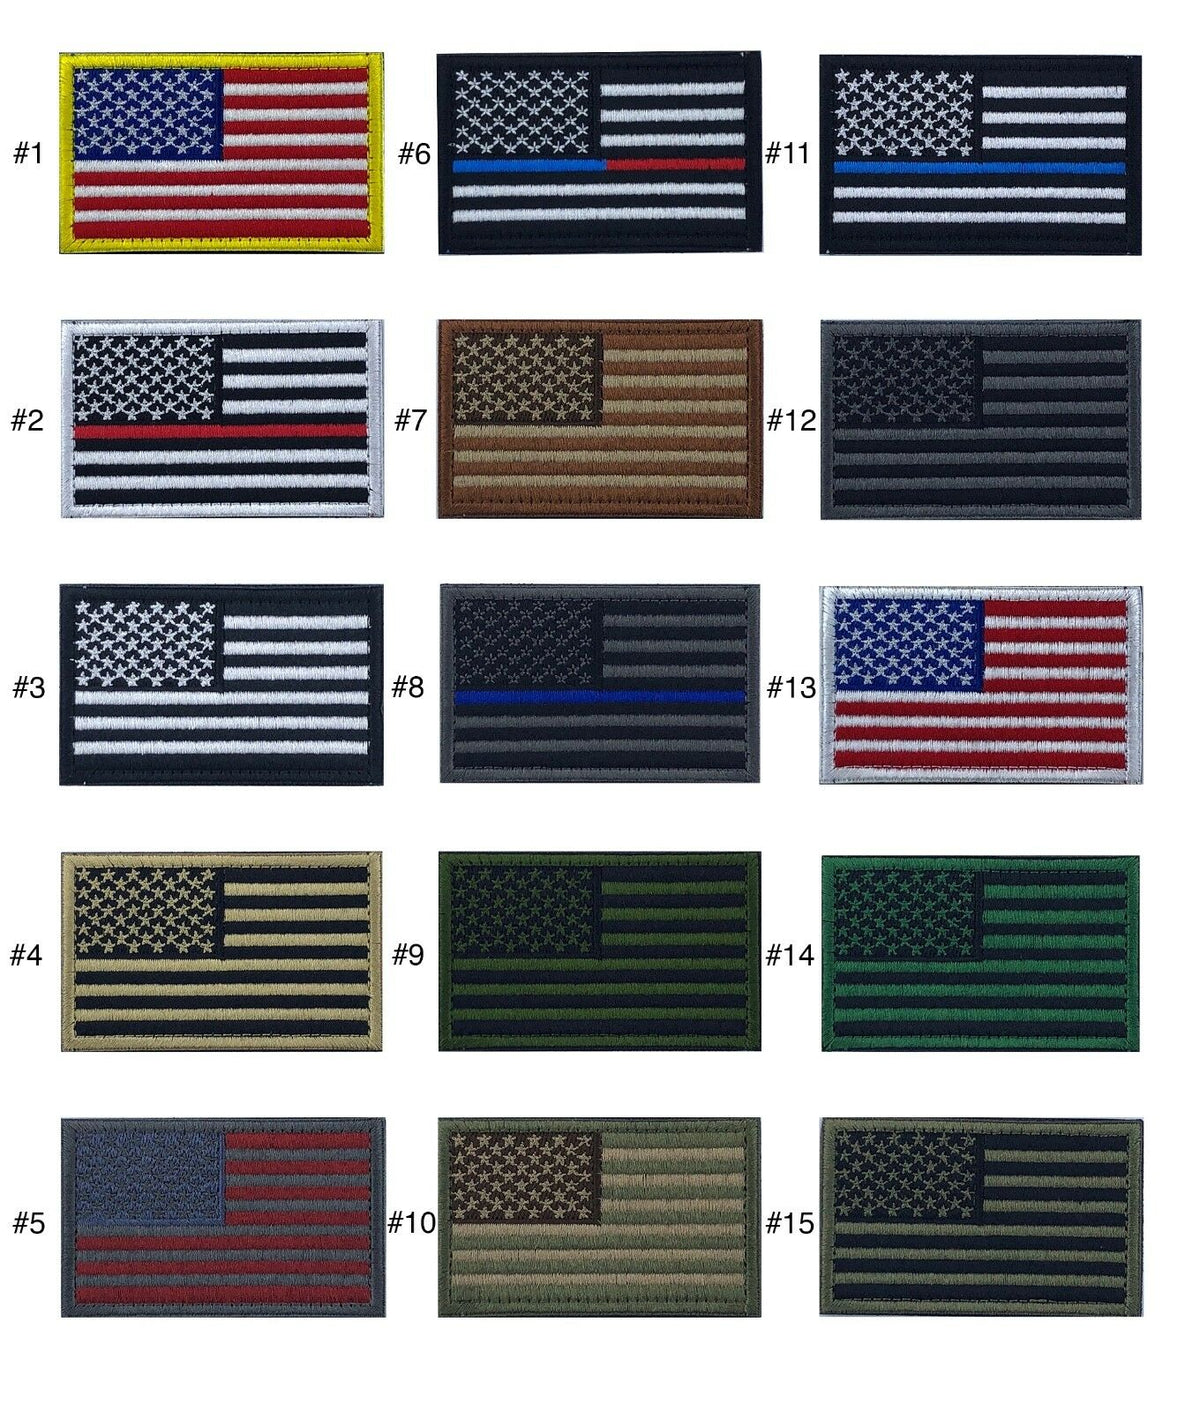 Parche de bandera estadounidense de 2.0 x 3.0 in, bordado para planchar o coser | Elección de bandera